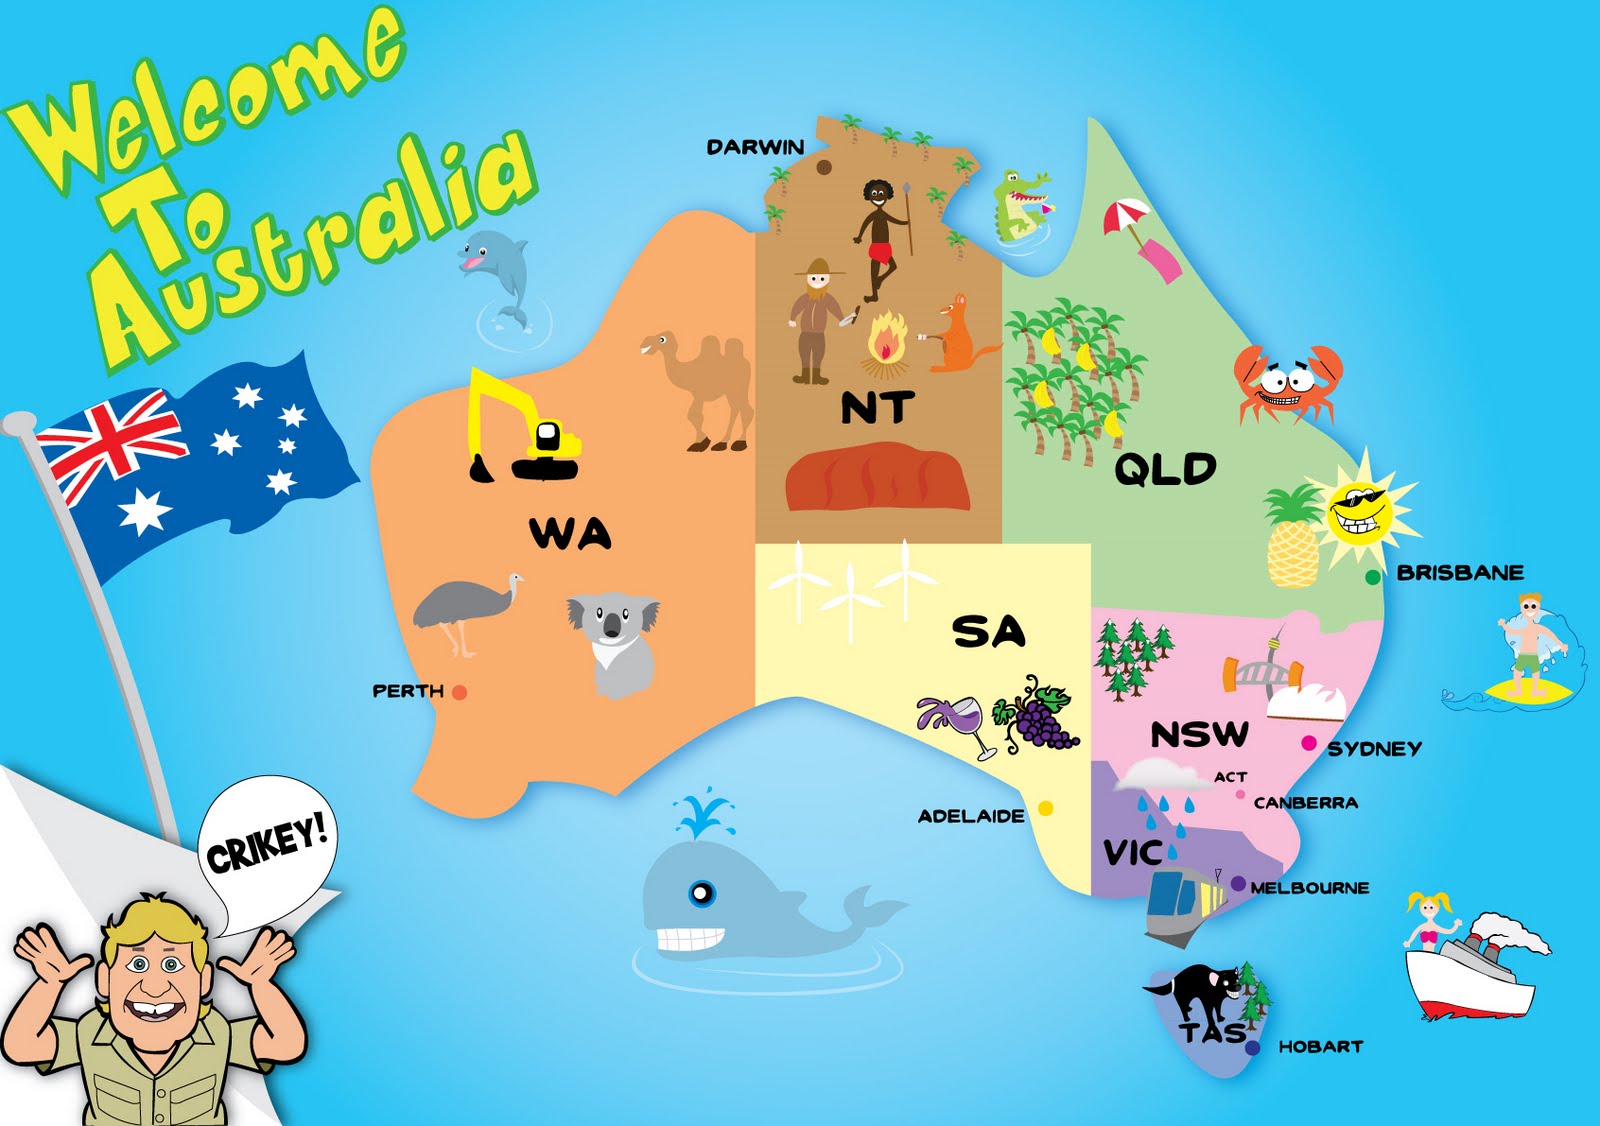 elise-s-designer-blog-australian-map